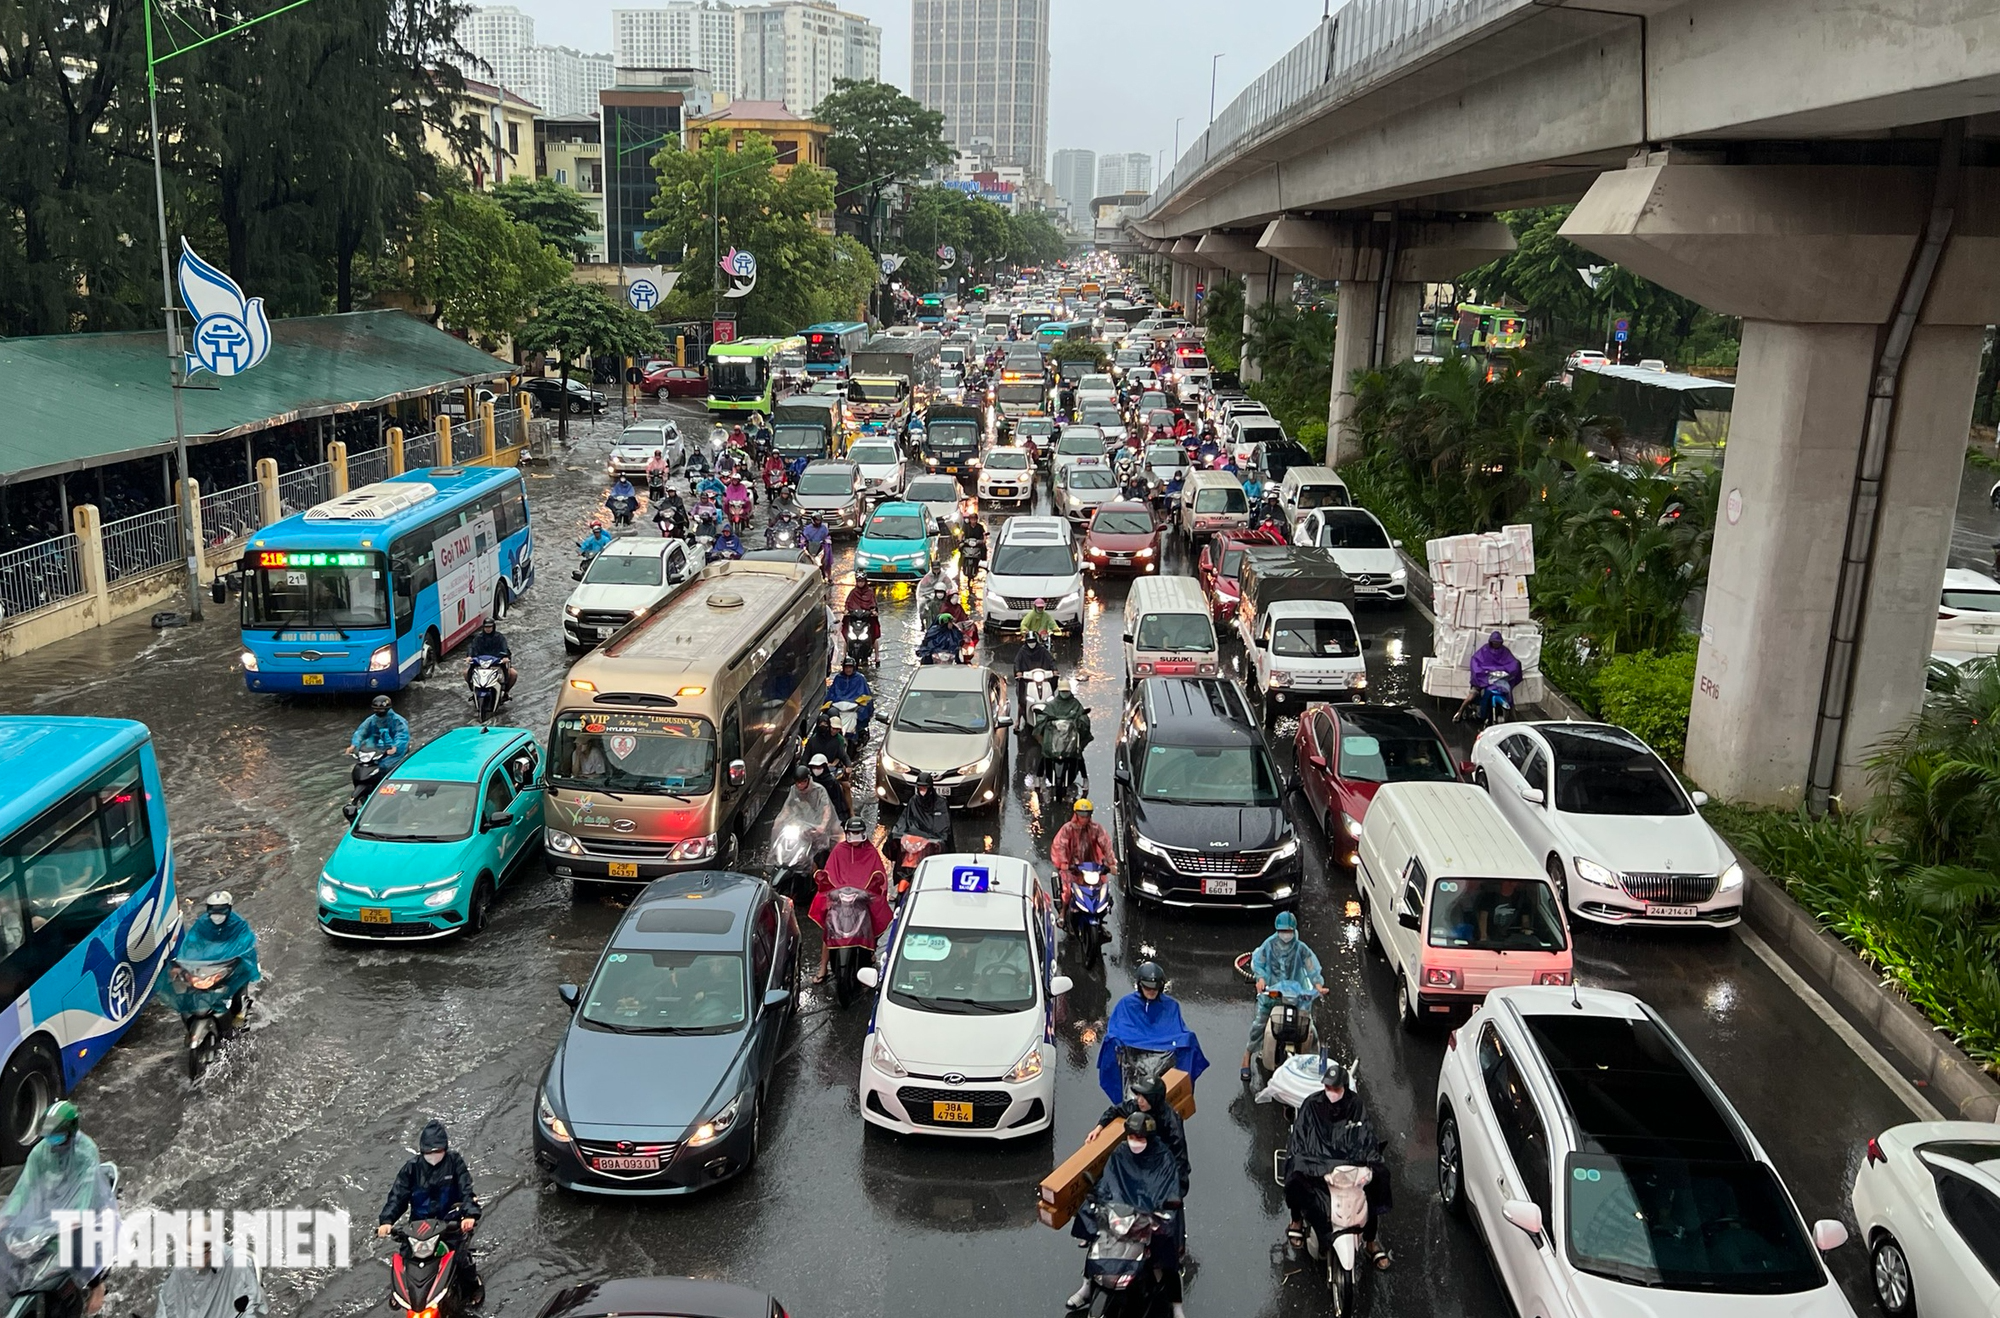 Hà Nội 'ngập như sông' sau mưa lớn, người dân khổ sở nhích từng mét trên đường - Ảnh 2.